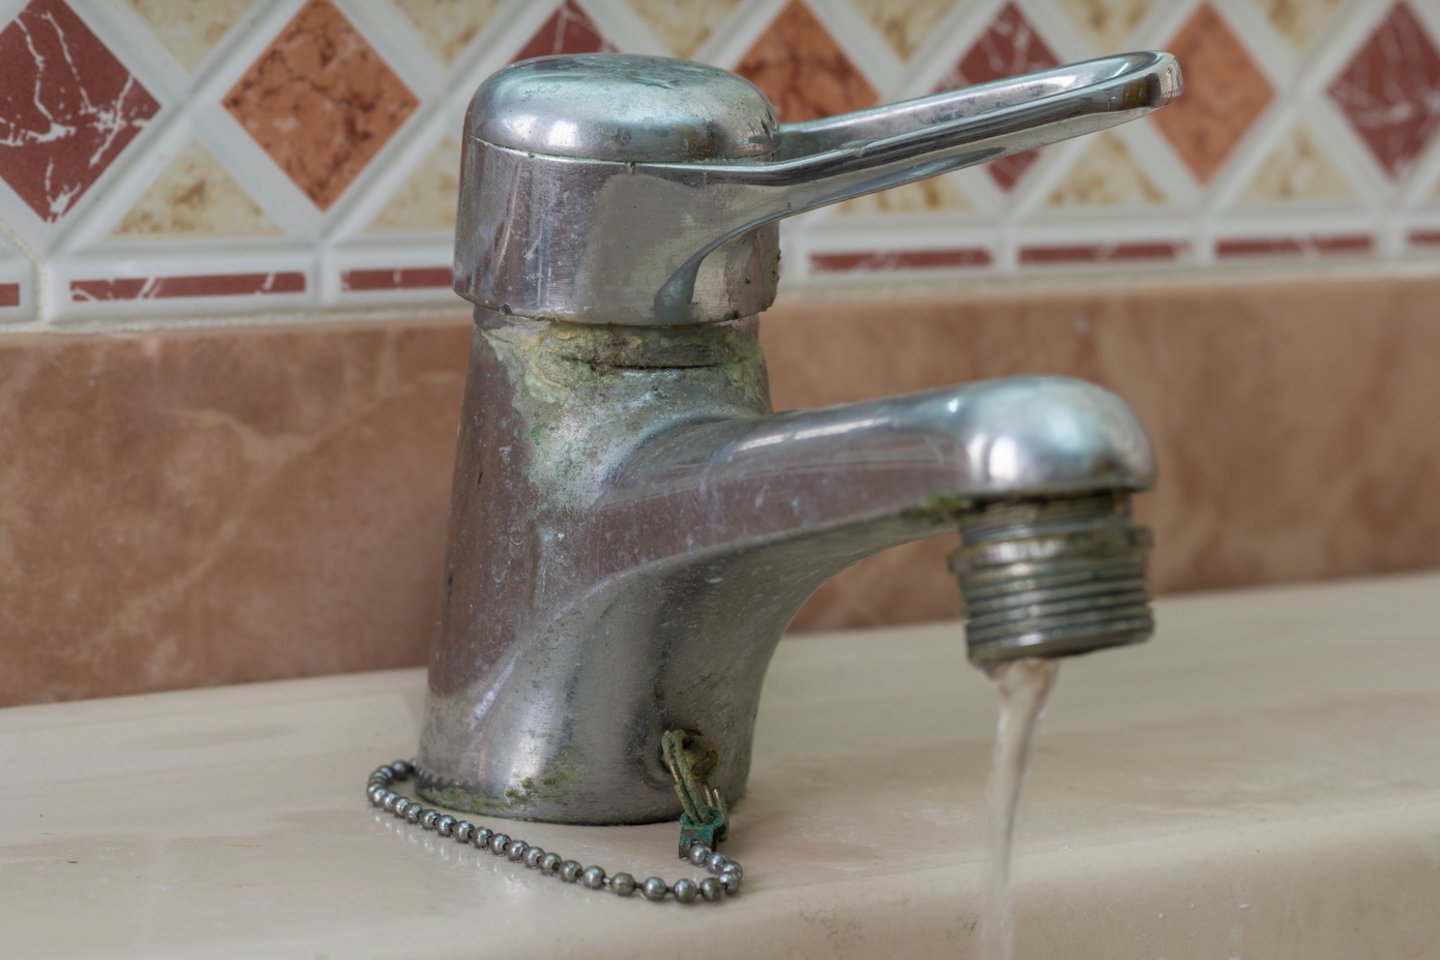 Itin svarbu, kad čiaupai namuose būtų tvarkingi: jei jie nuolat laša, per valandą veltui gali išvarvėti net apie 1 litrą vandens.<br>123 rf nuotr.